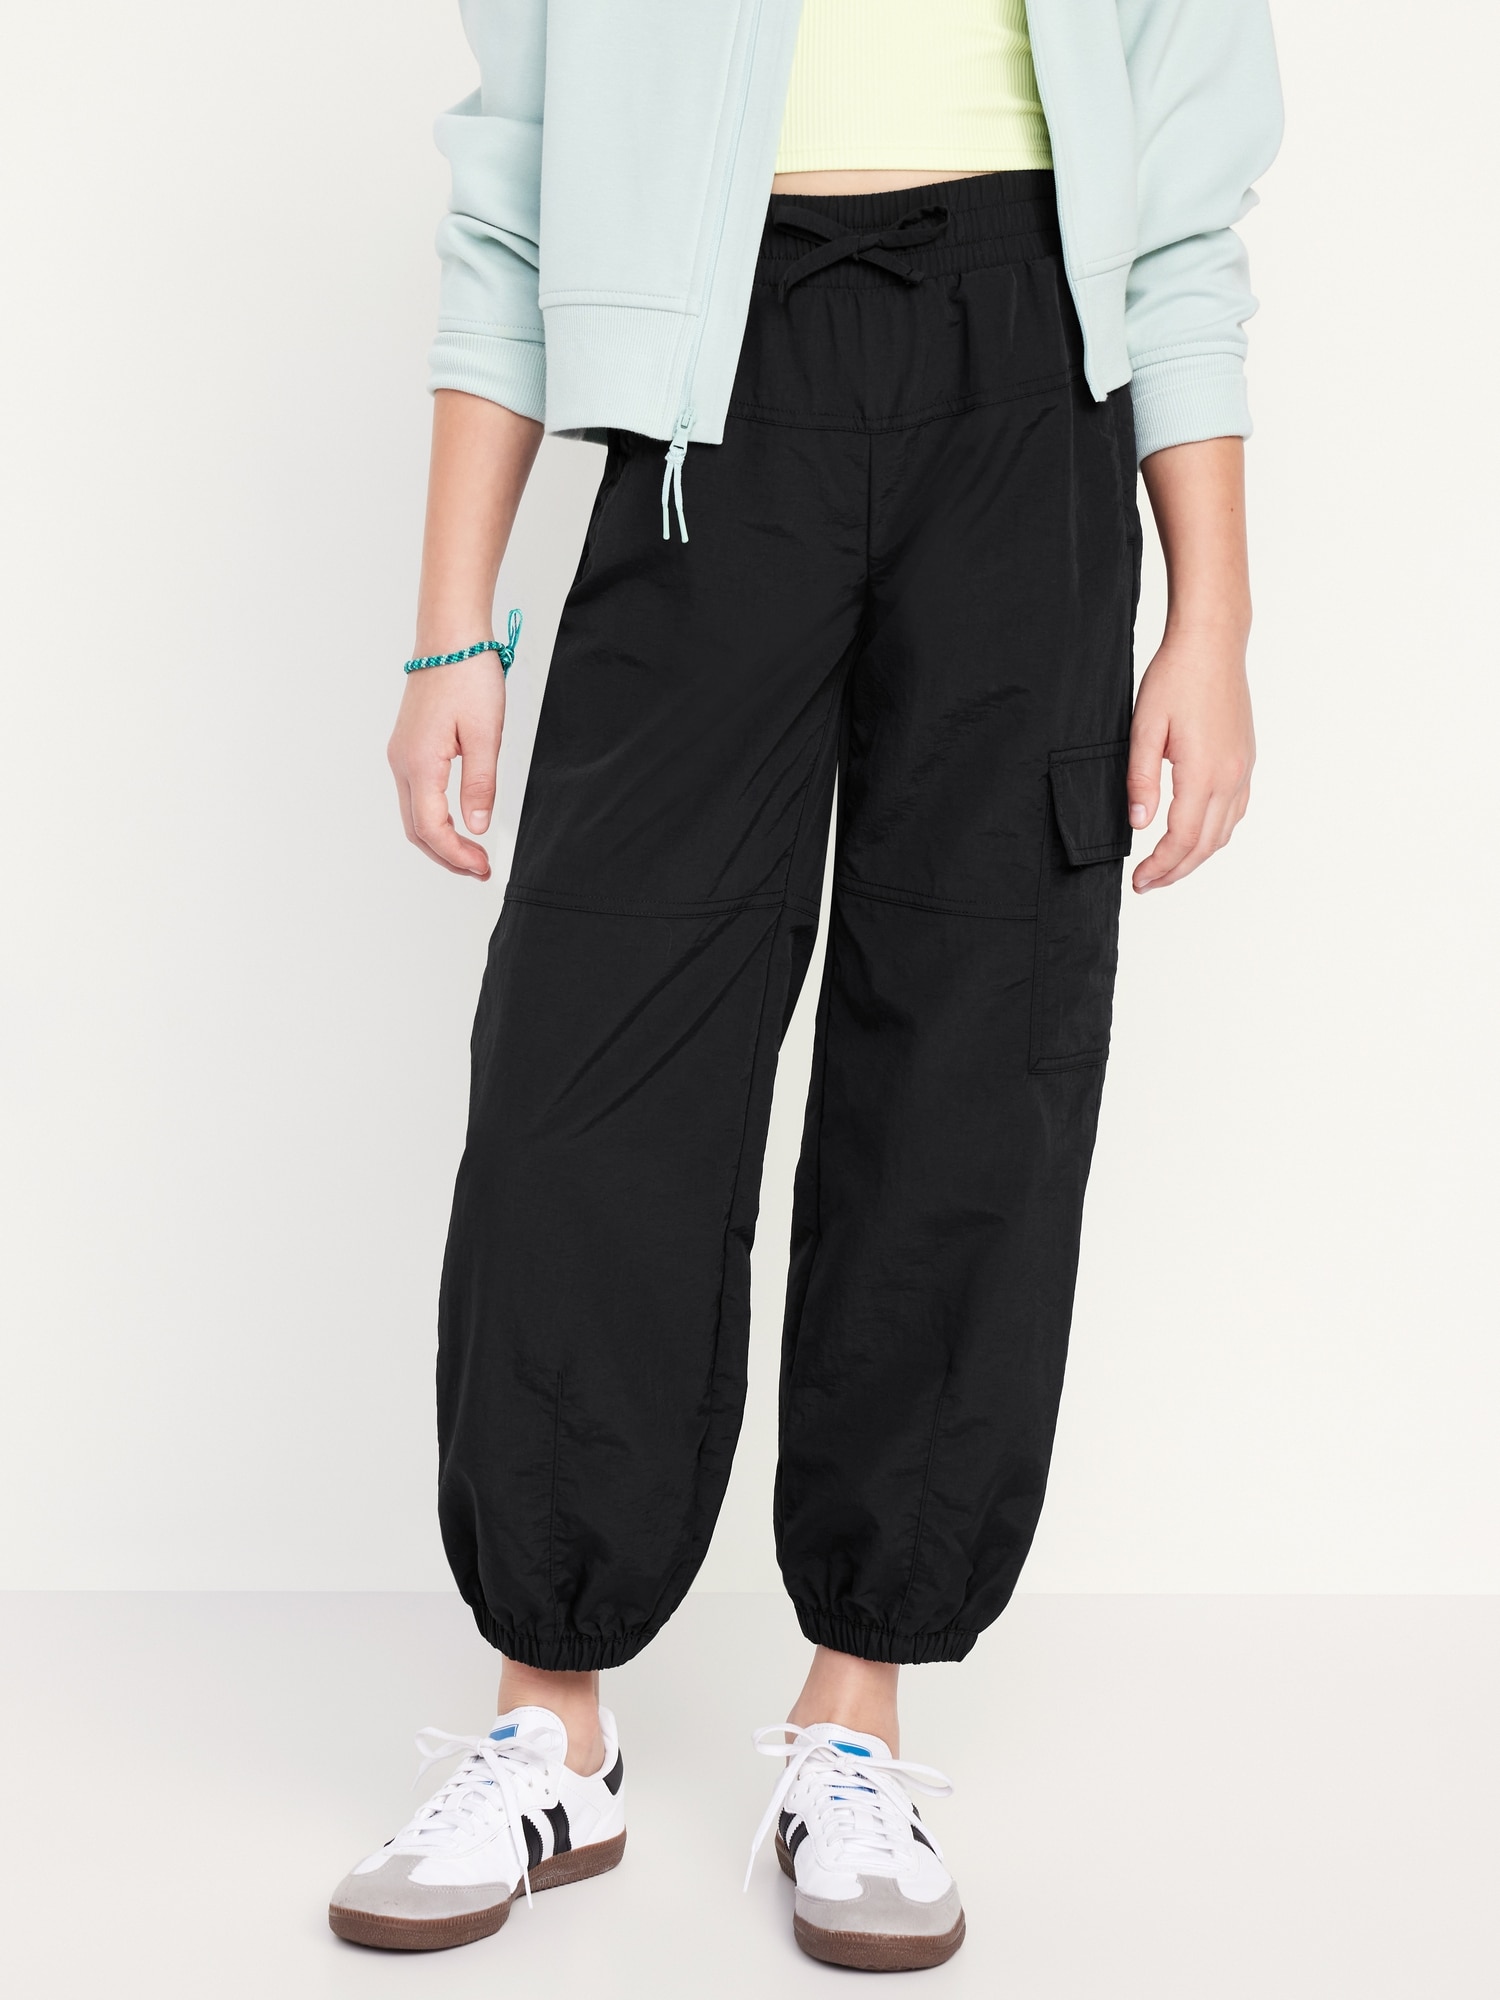 Camo Yoga Pants - Women's Camouflage Pants - What Devotion❓ - Coolest  Online Fashion Trends